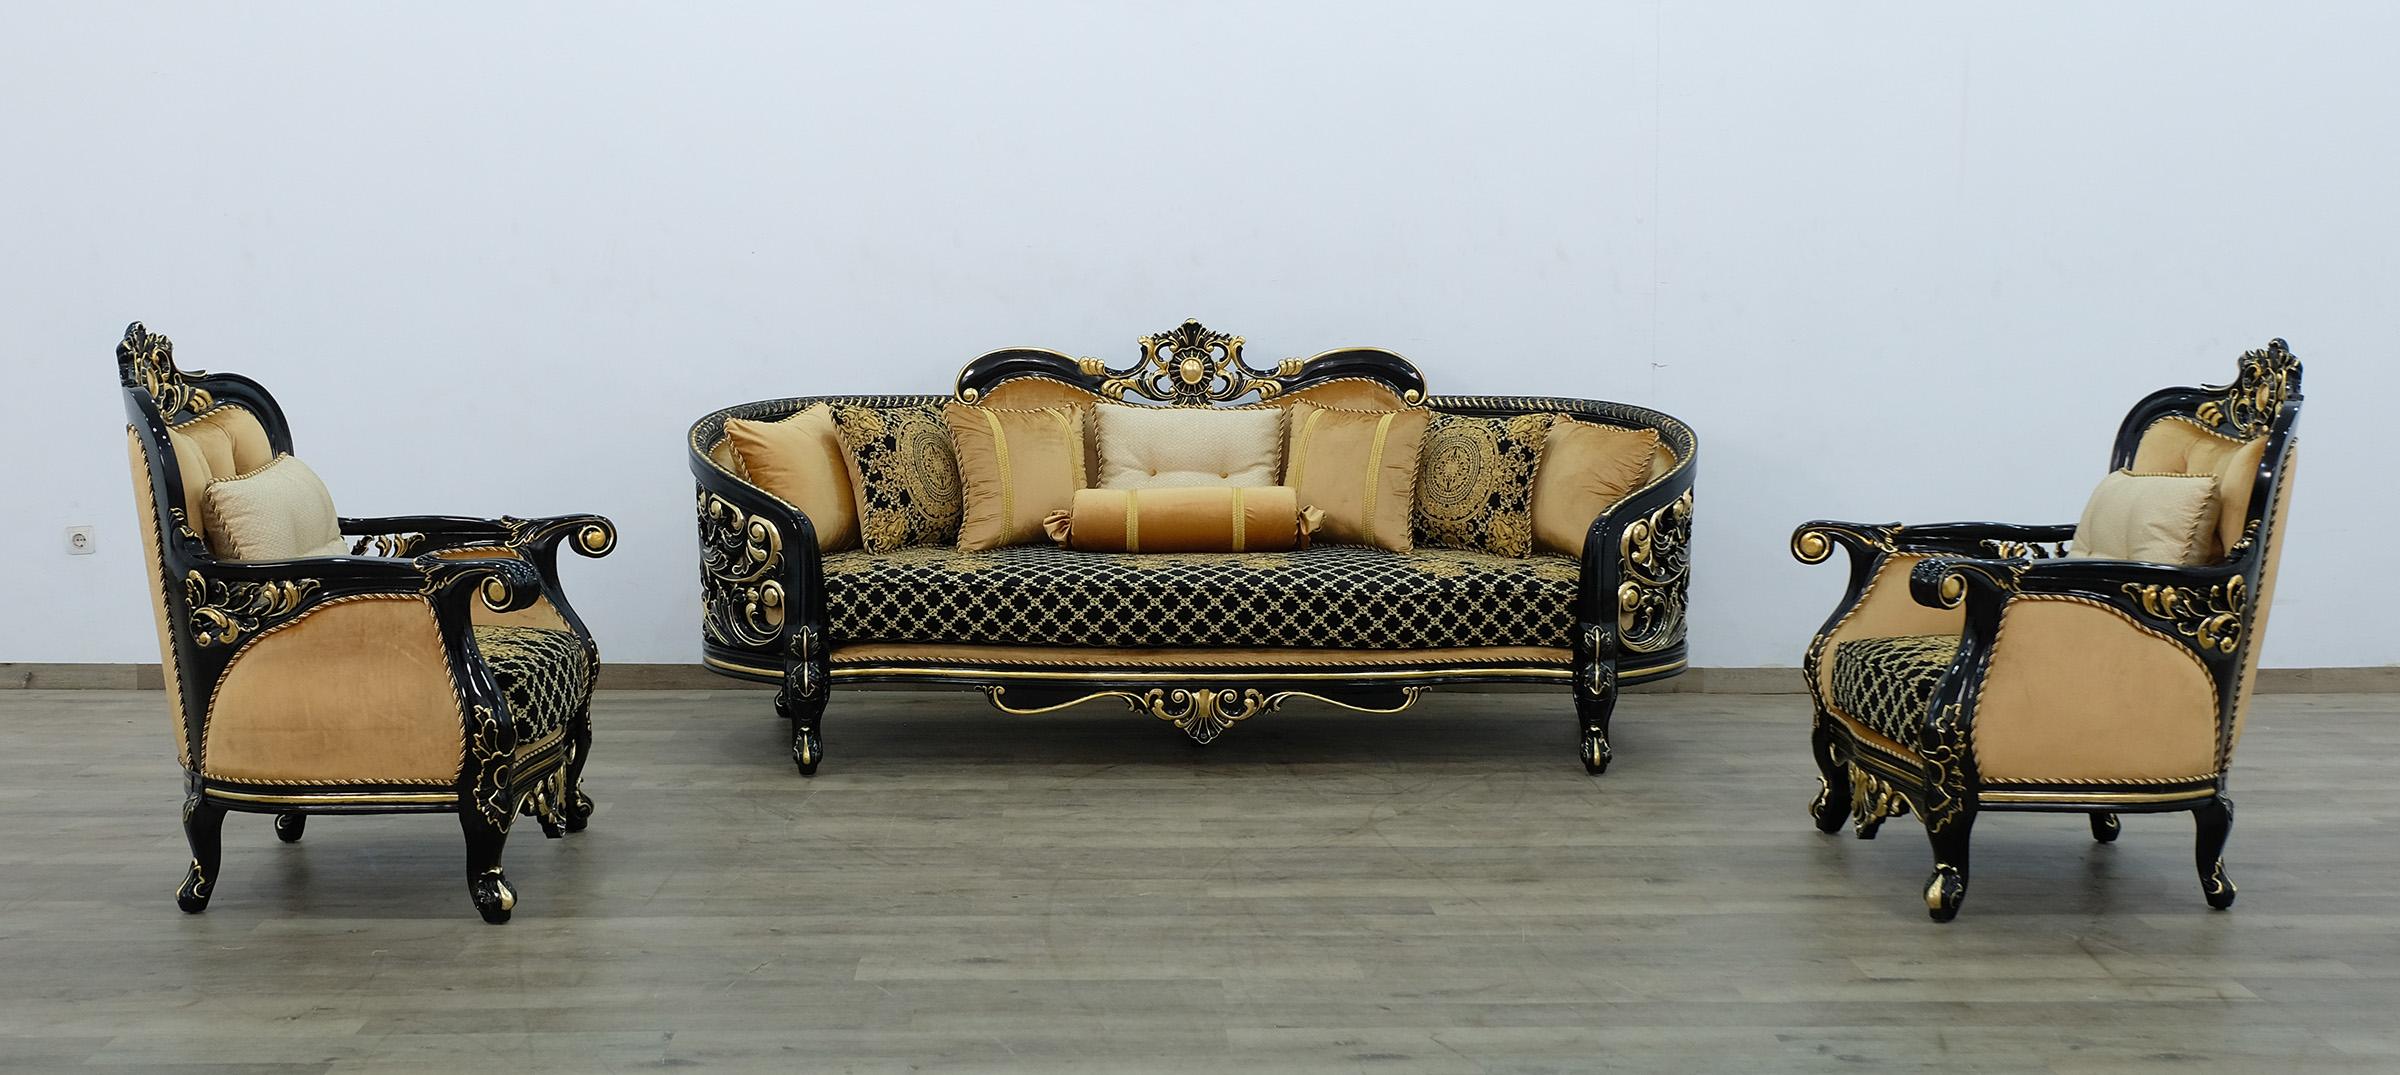 Classic, Traditional Sofa Set BELLAGIO III 30019-S-Set-3 in Antique, Gold, Black Velvet